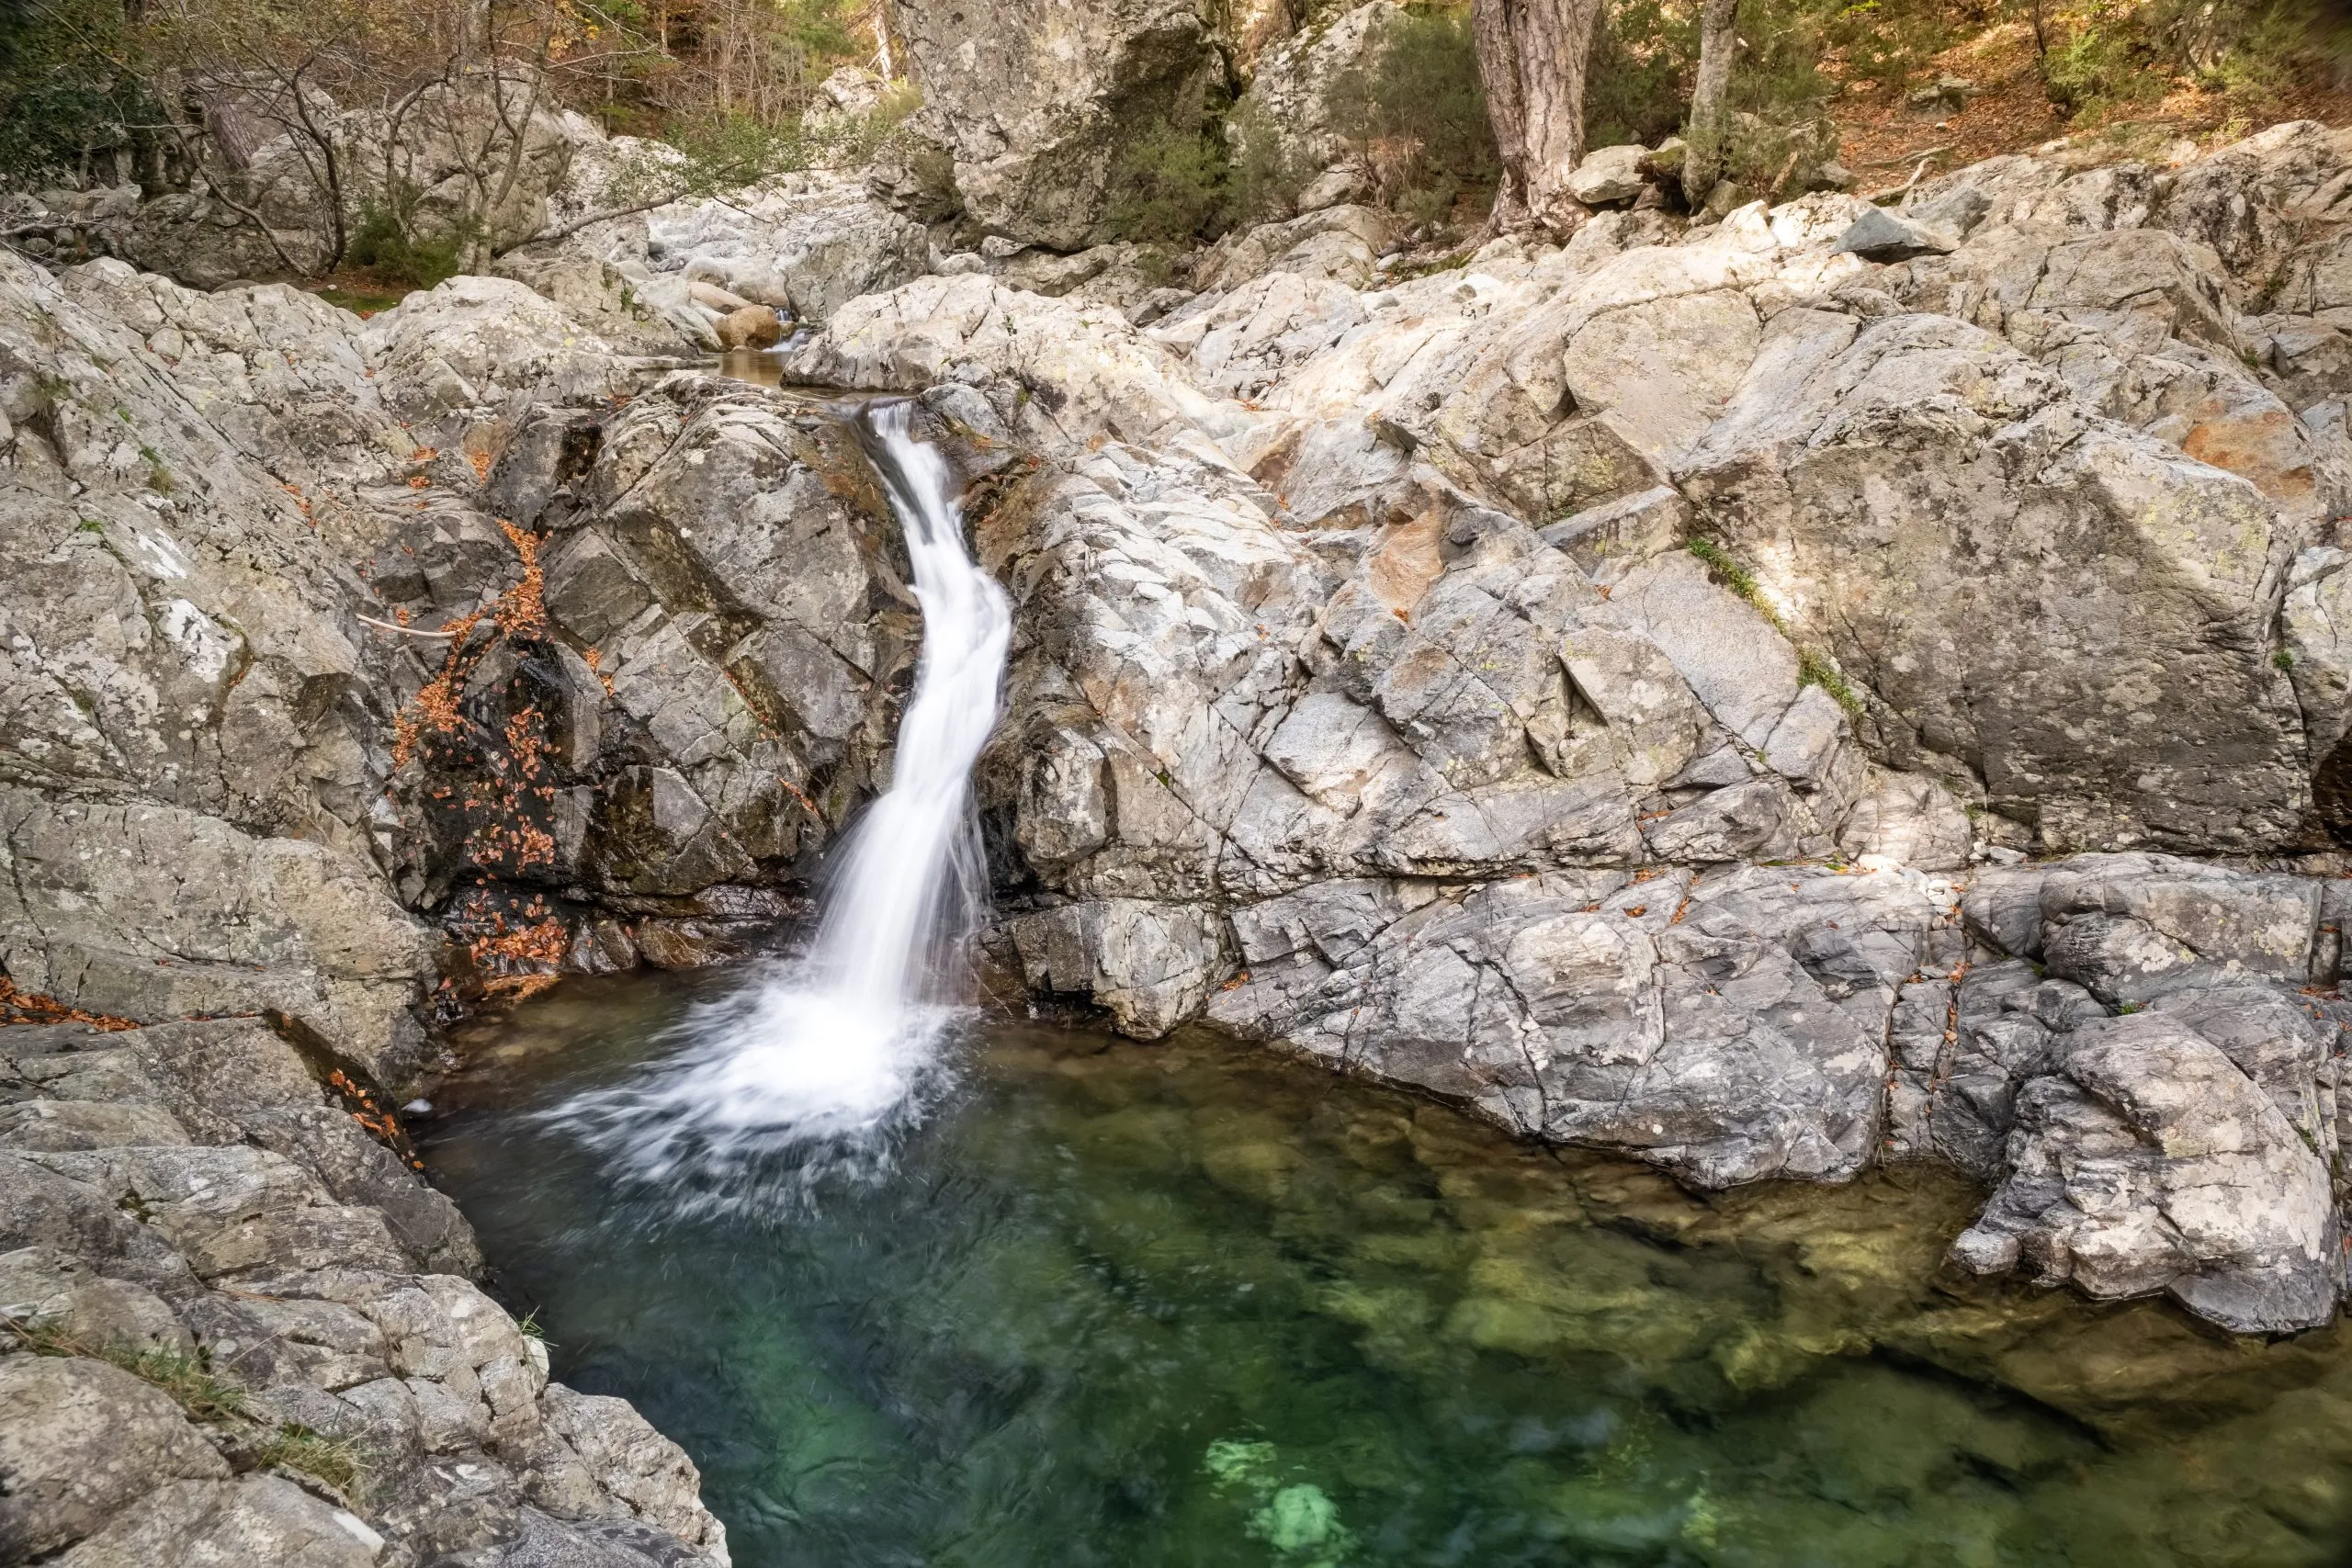 Find hidden waterfalls in the Vizzavona forest